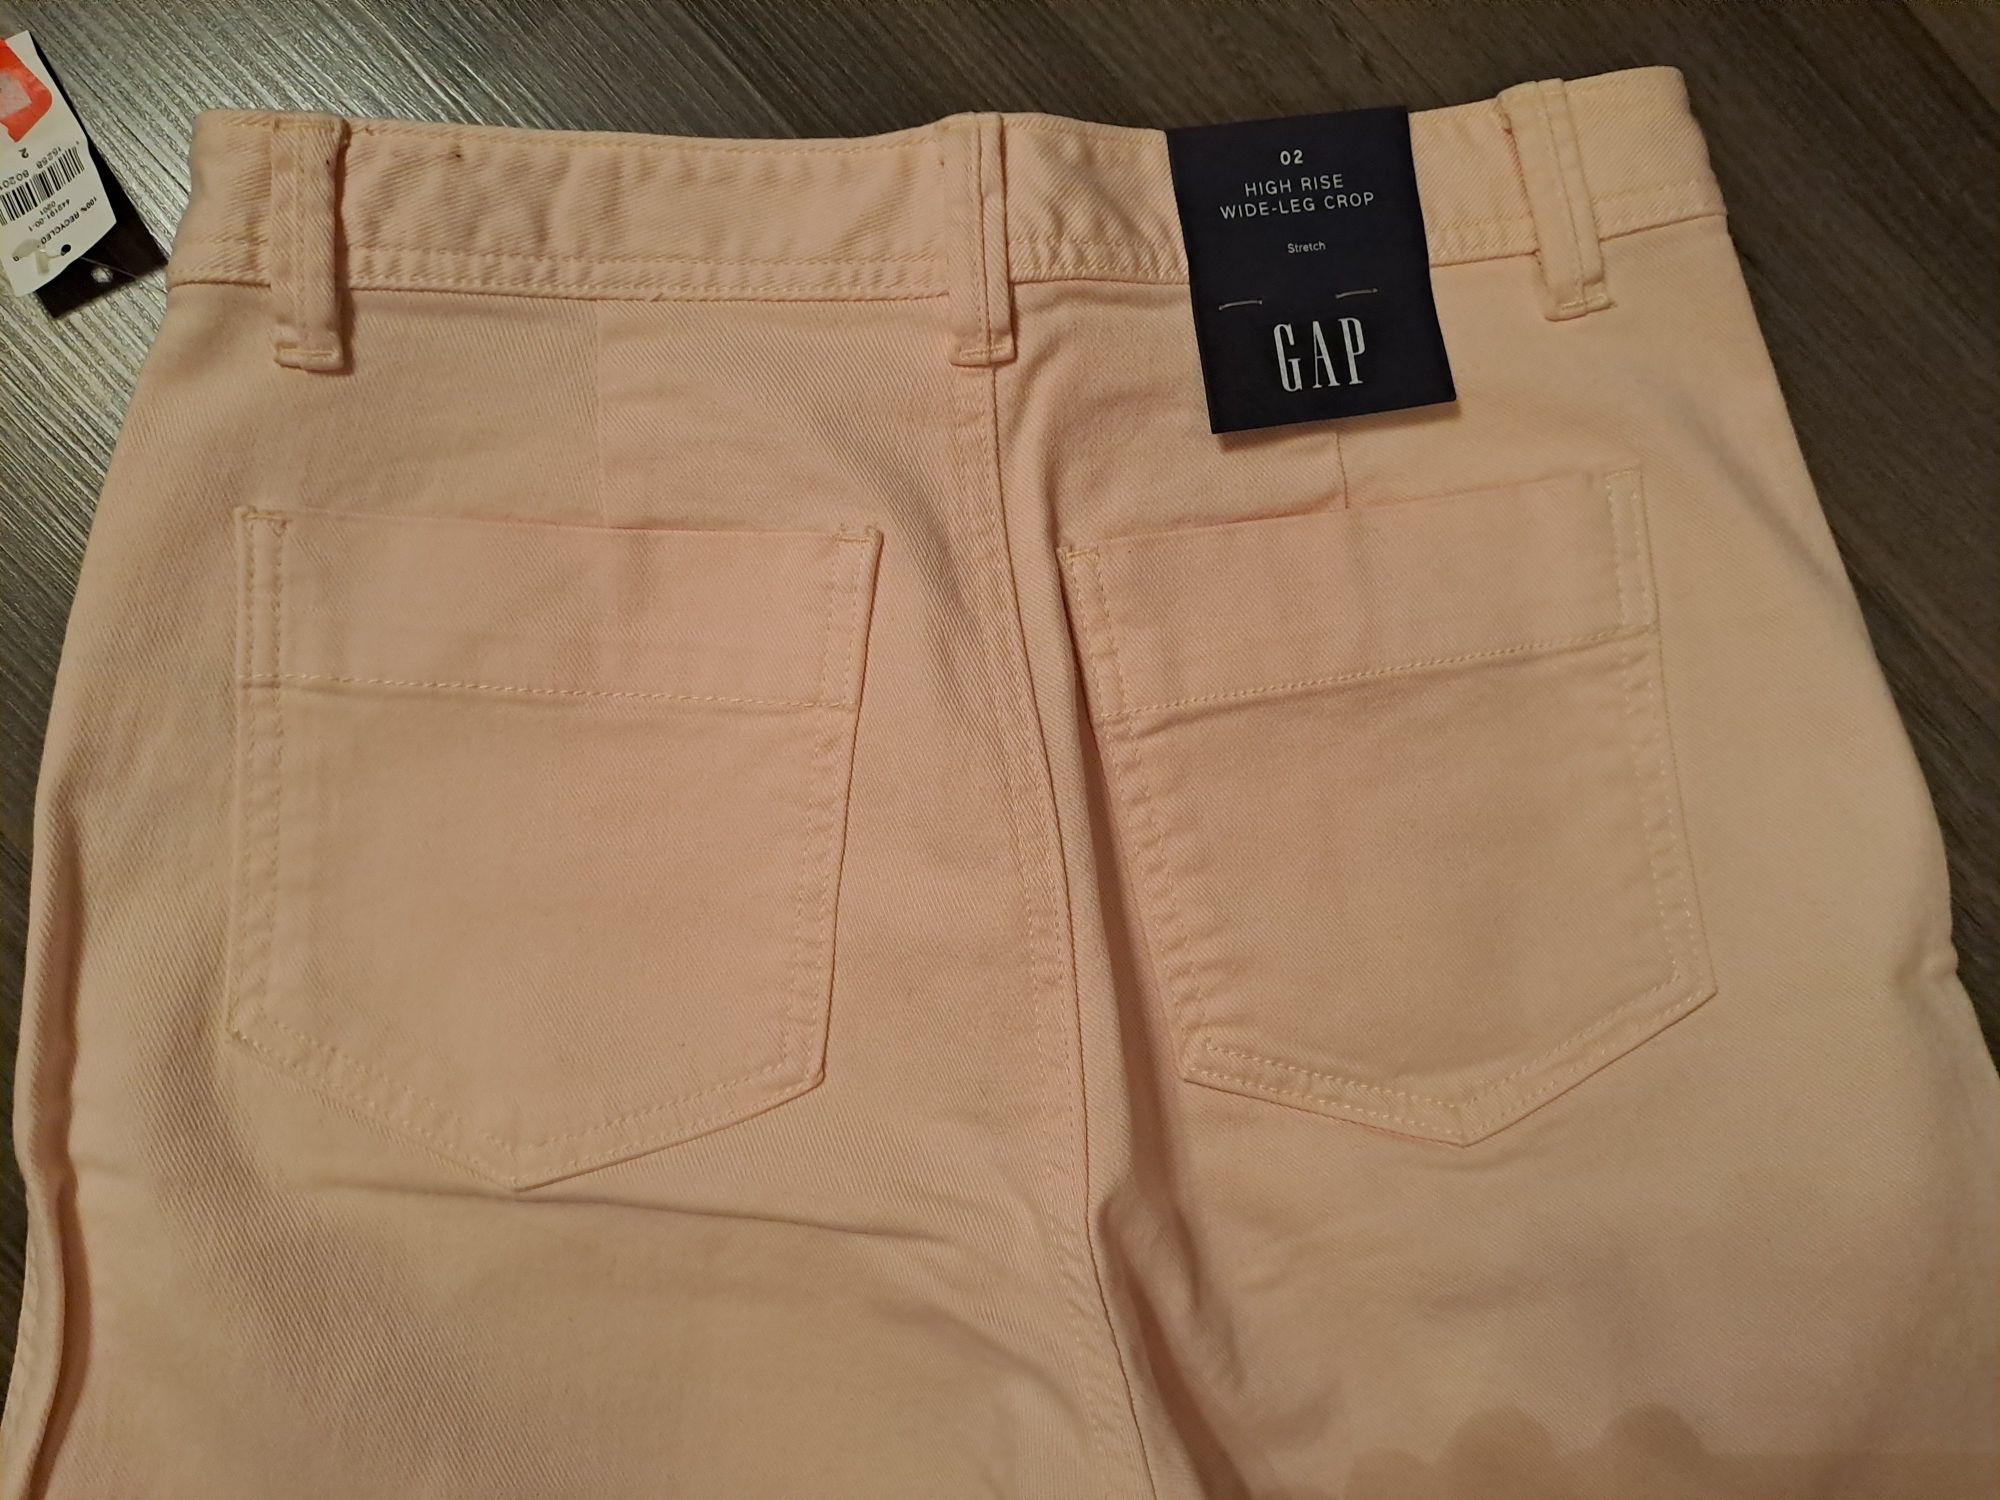 Стильные, новые джинсы high rise wild leg grop GAP Цвет розовый, барби